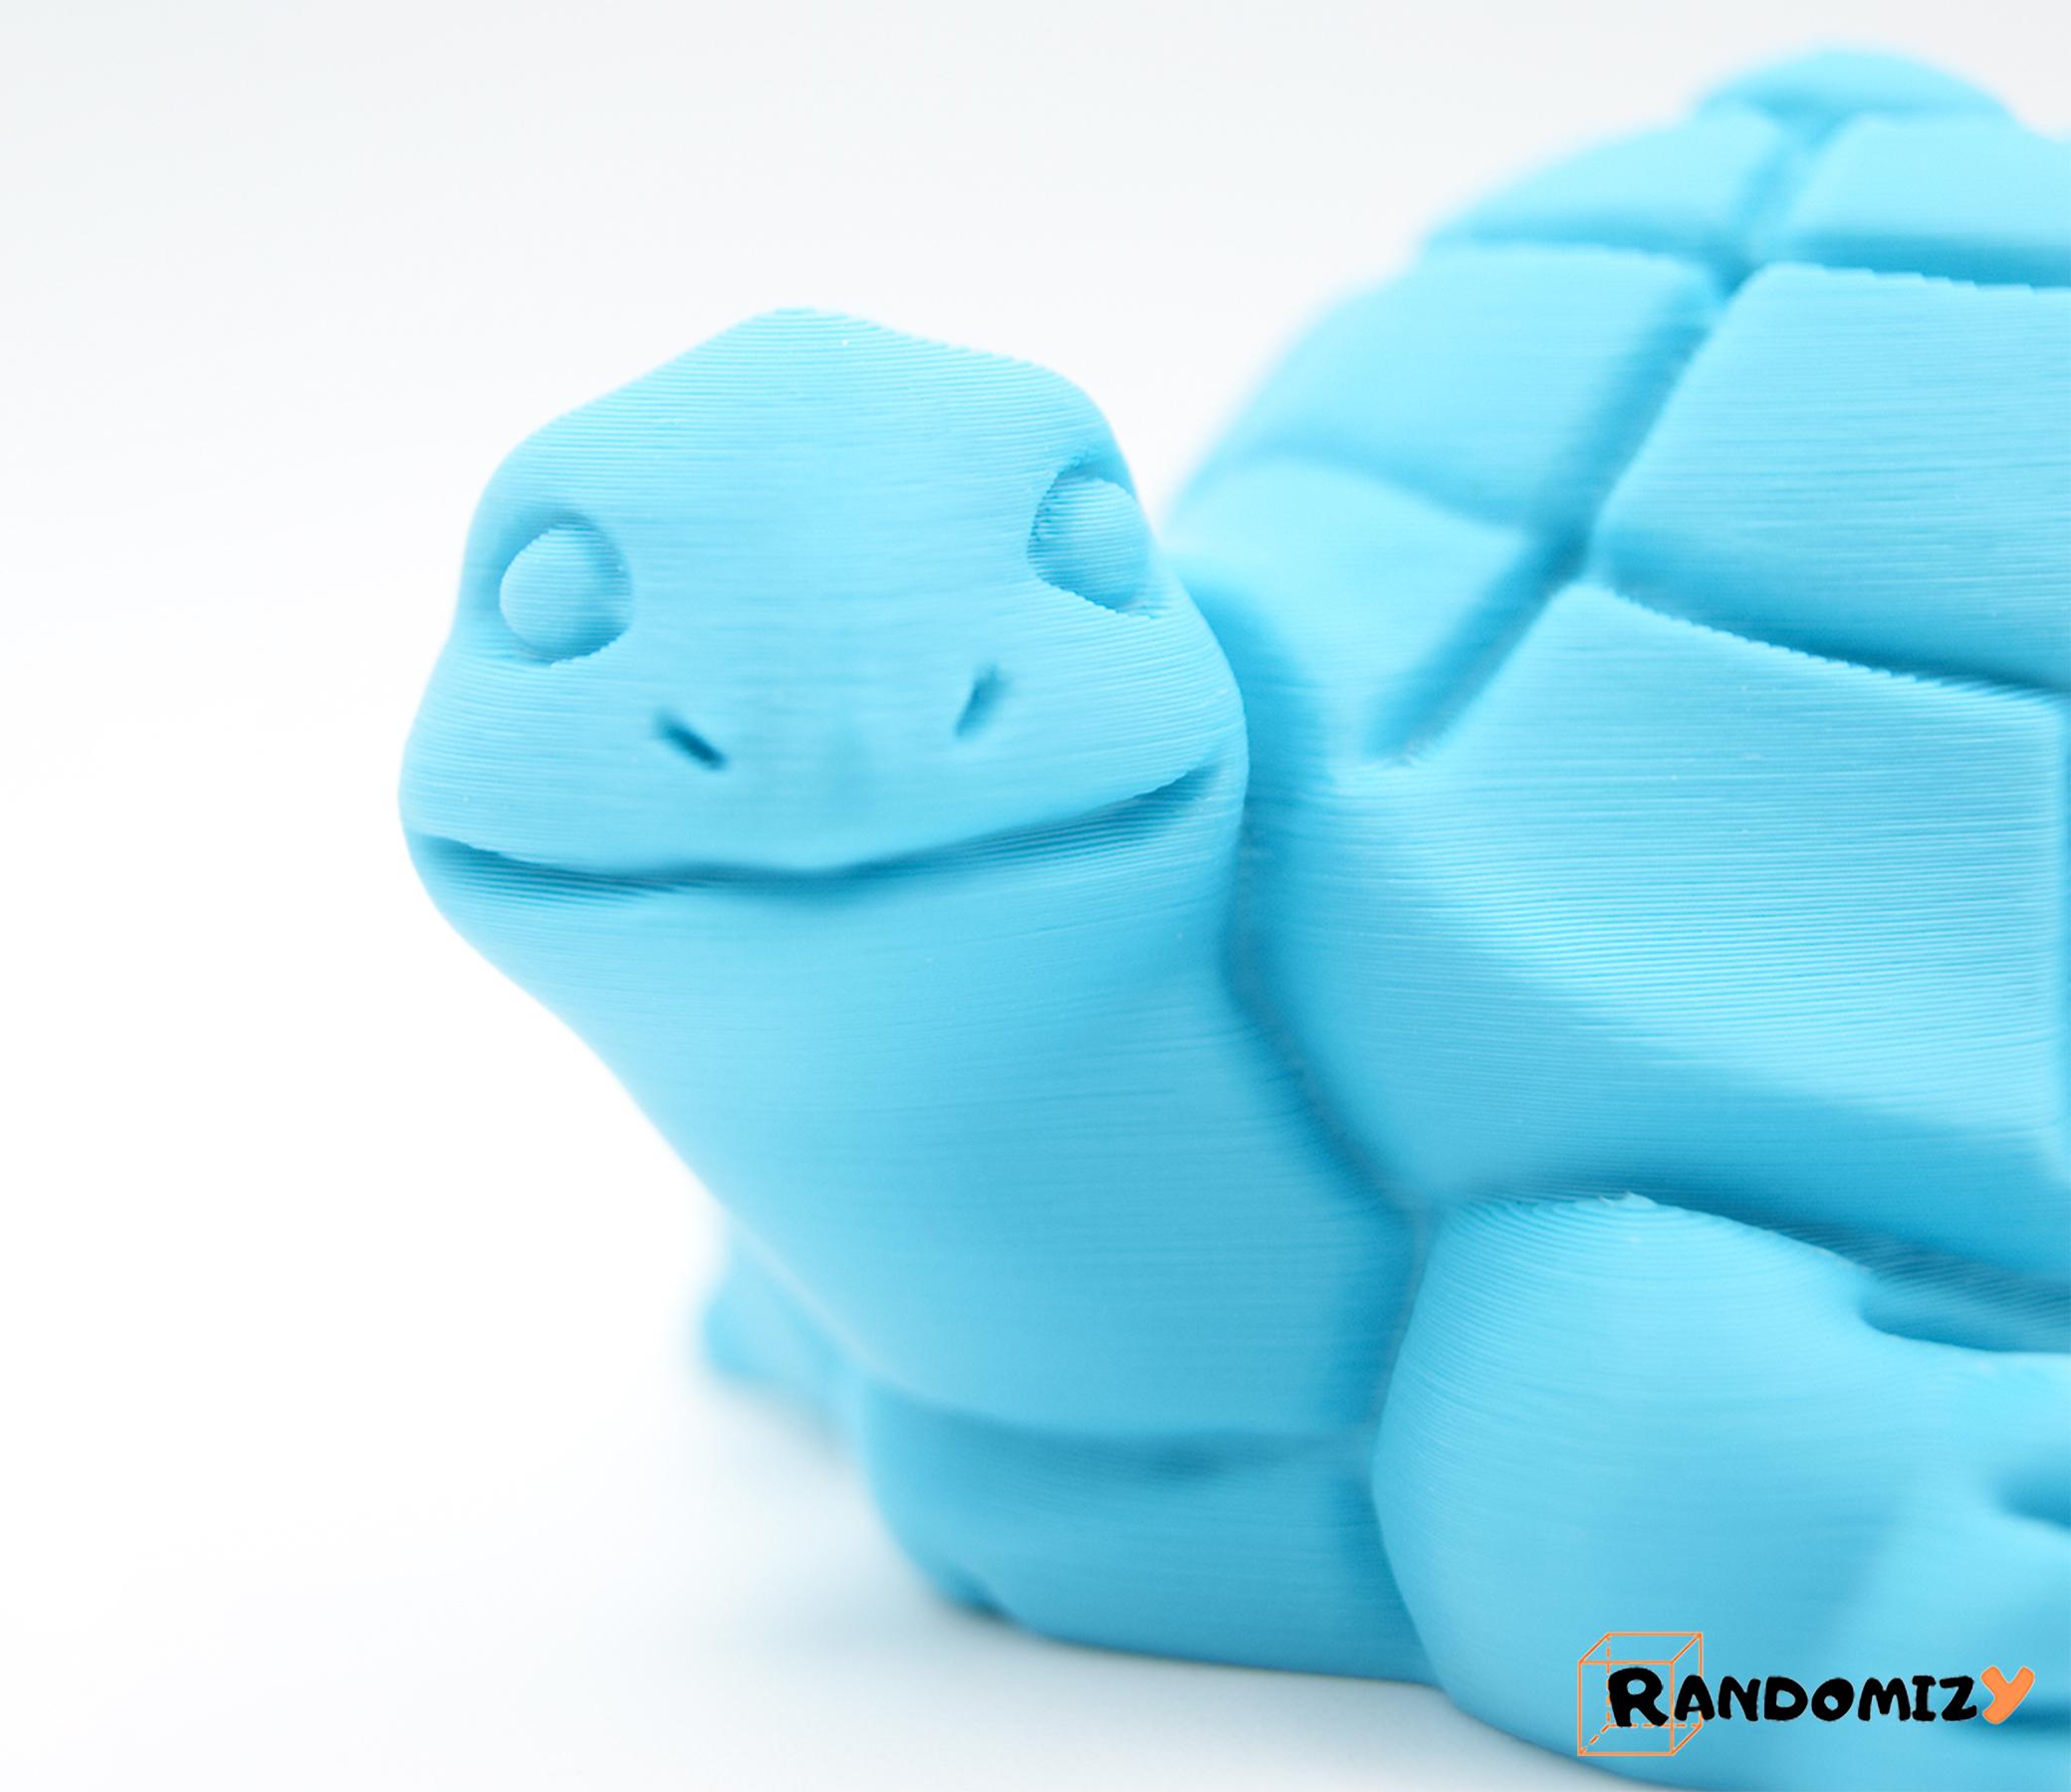 Turtle 3d model